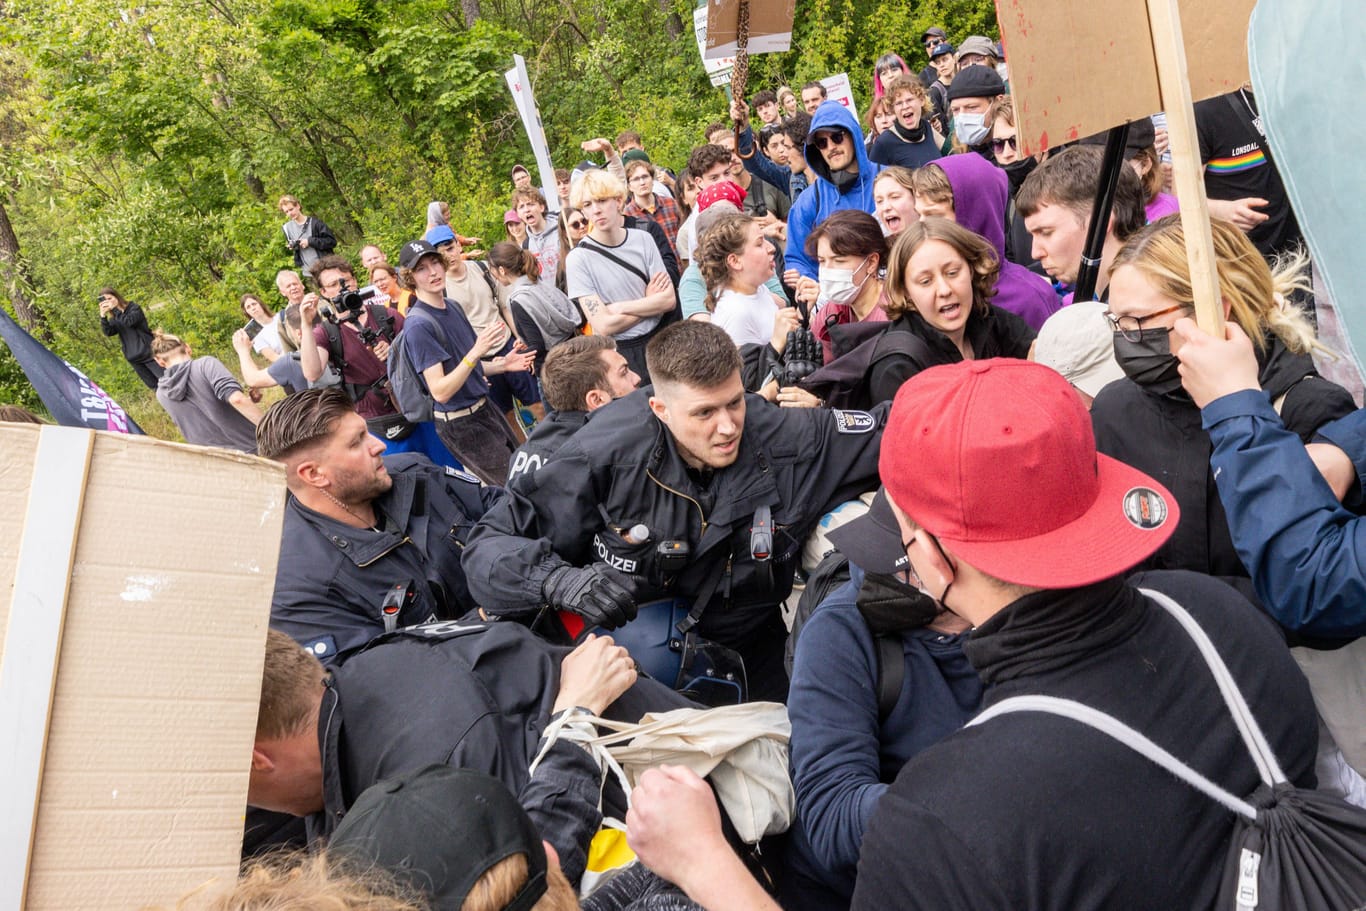 Demonstranten gegen Polizisten: Bei den Protesten kam es zu Auseinandersetzungen.